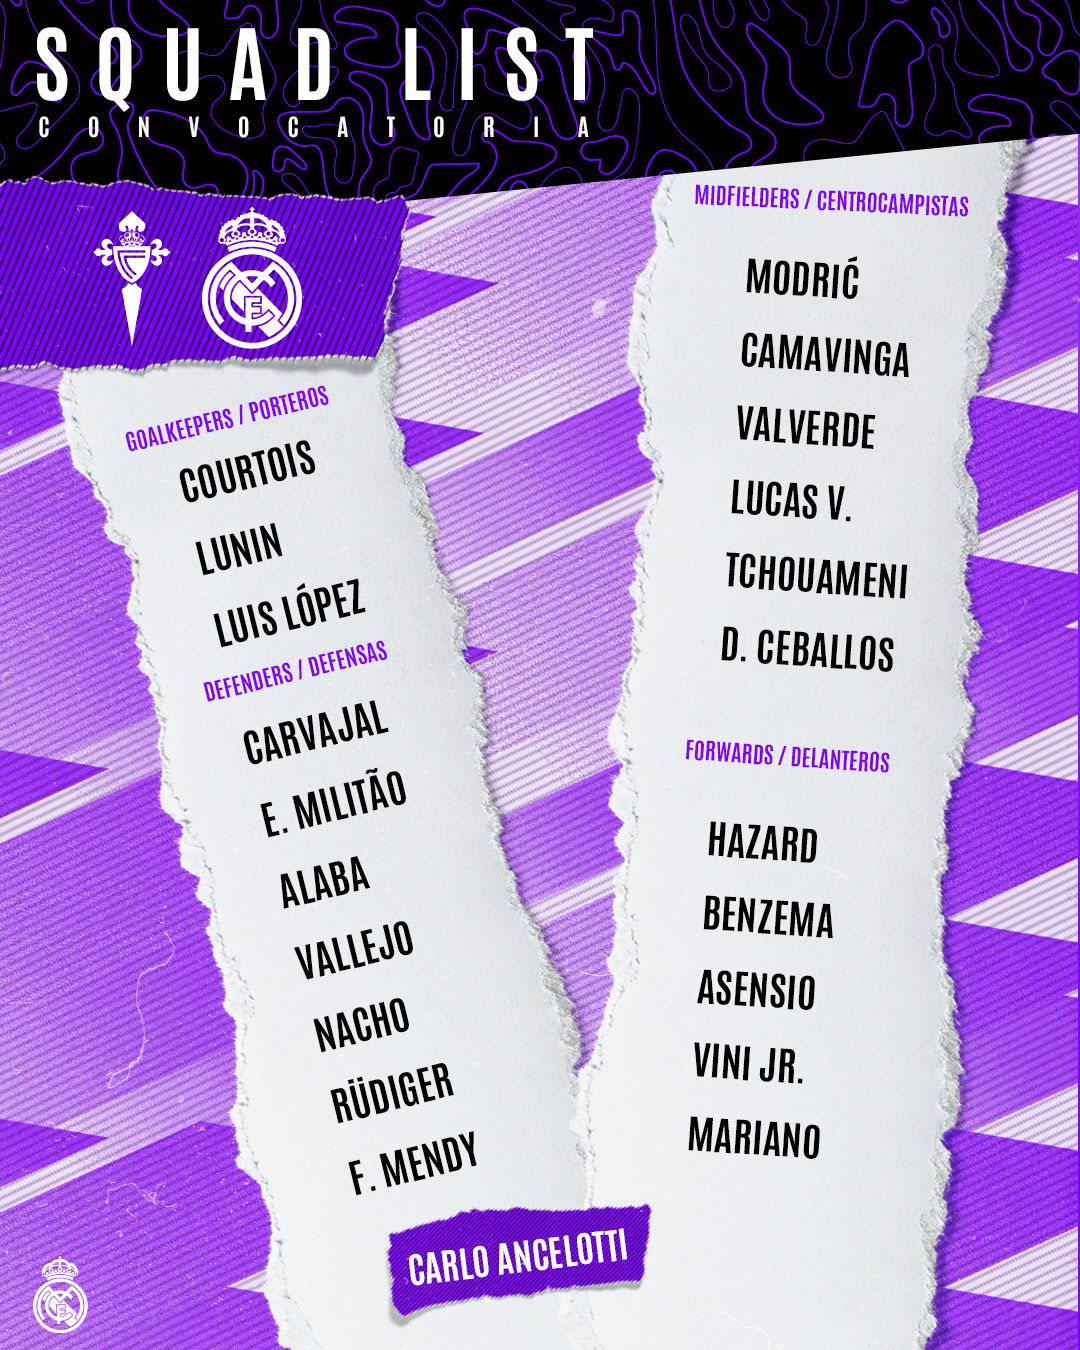 Real Madrid : Casemiro absent du groupe convoqué face au Celta de Vigo